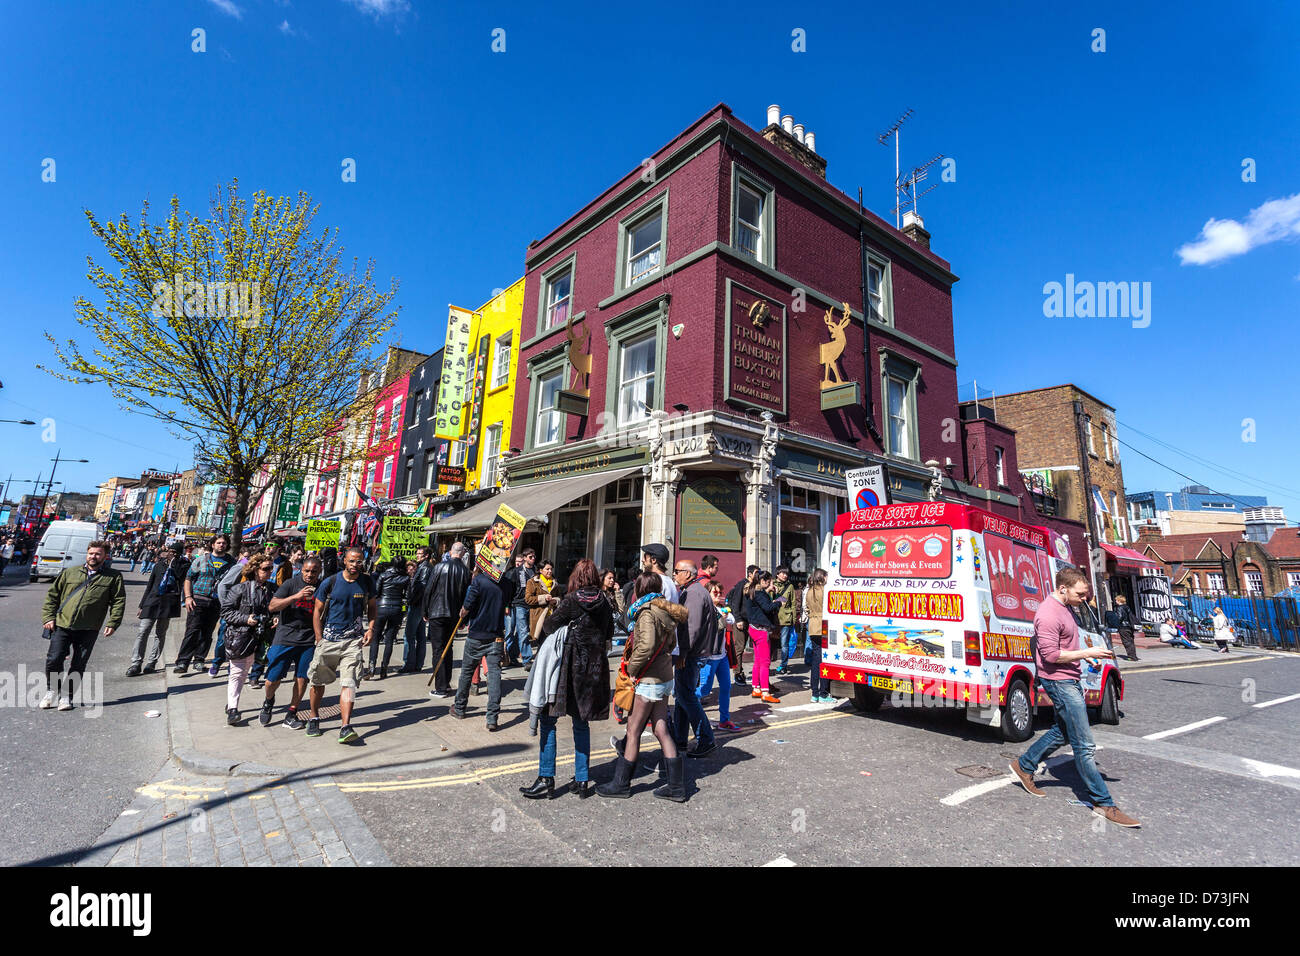 La cittadina di Camden Street scene, London, England, Regno Unito Foto Stock